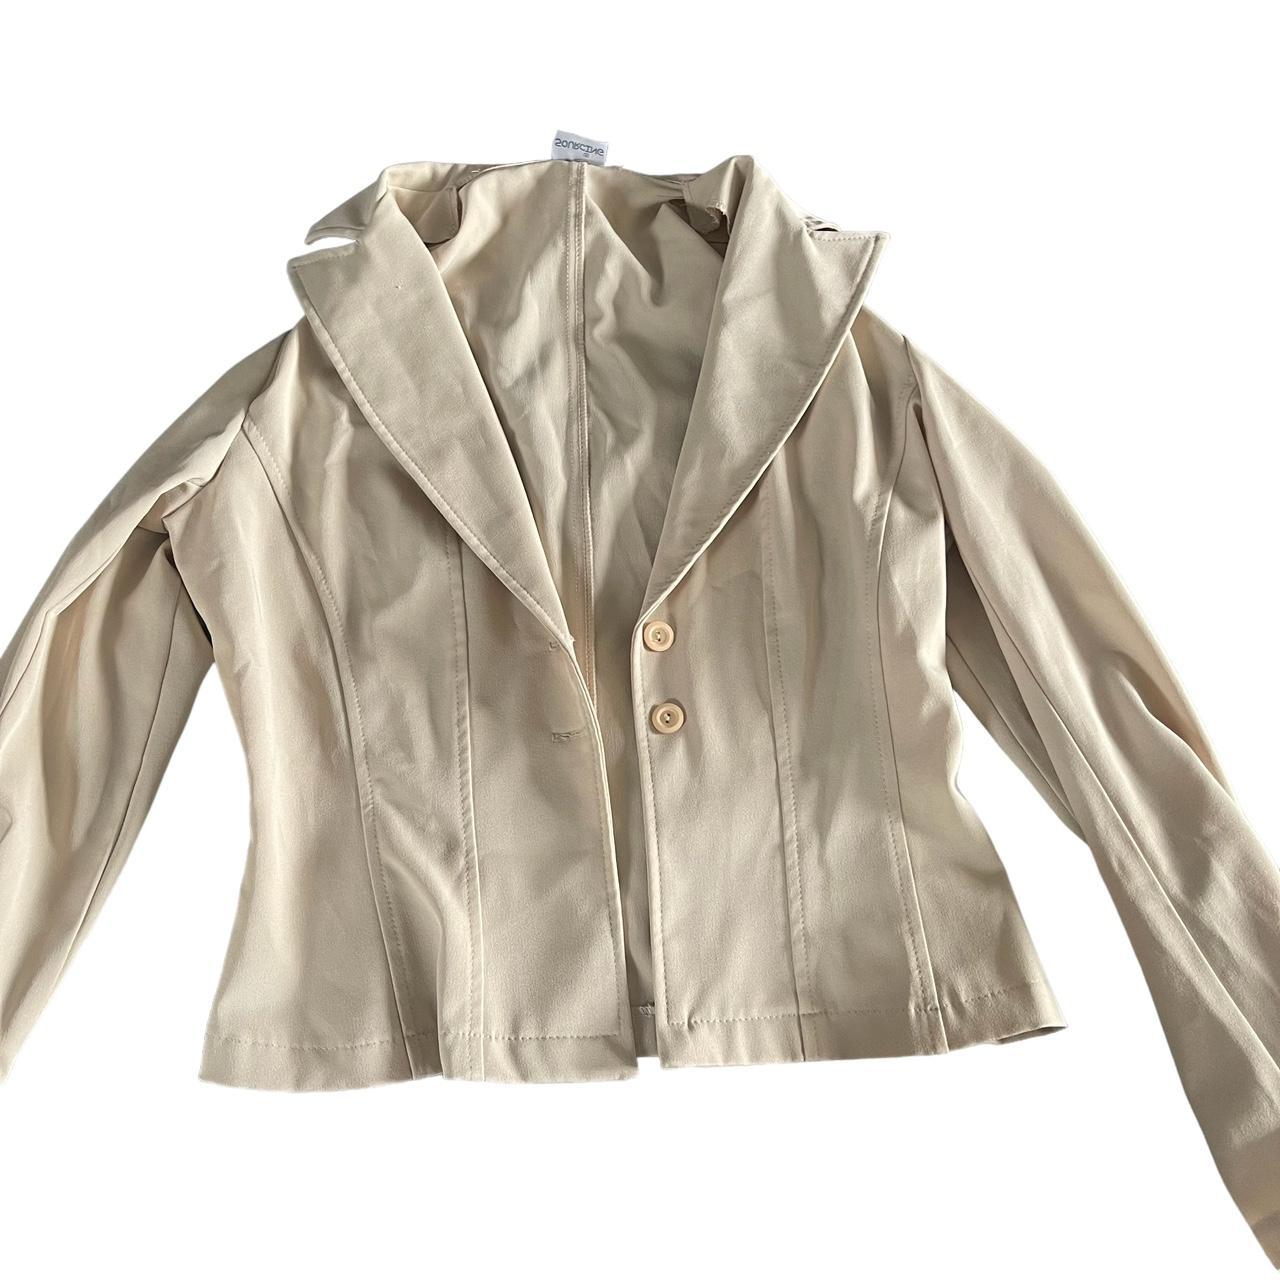 Beige button blouse jacket! Vintage 90s jacket... - Depop